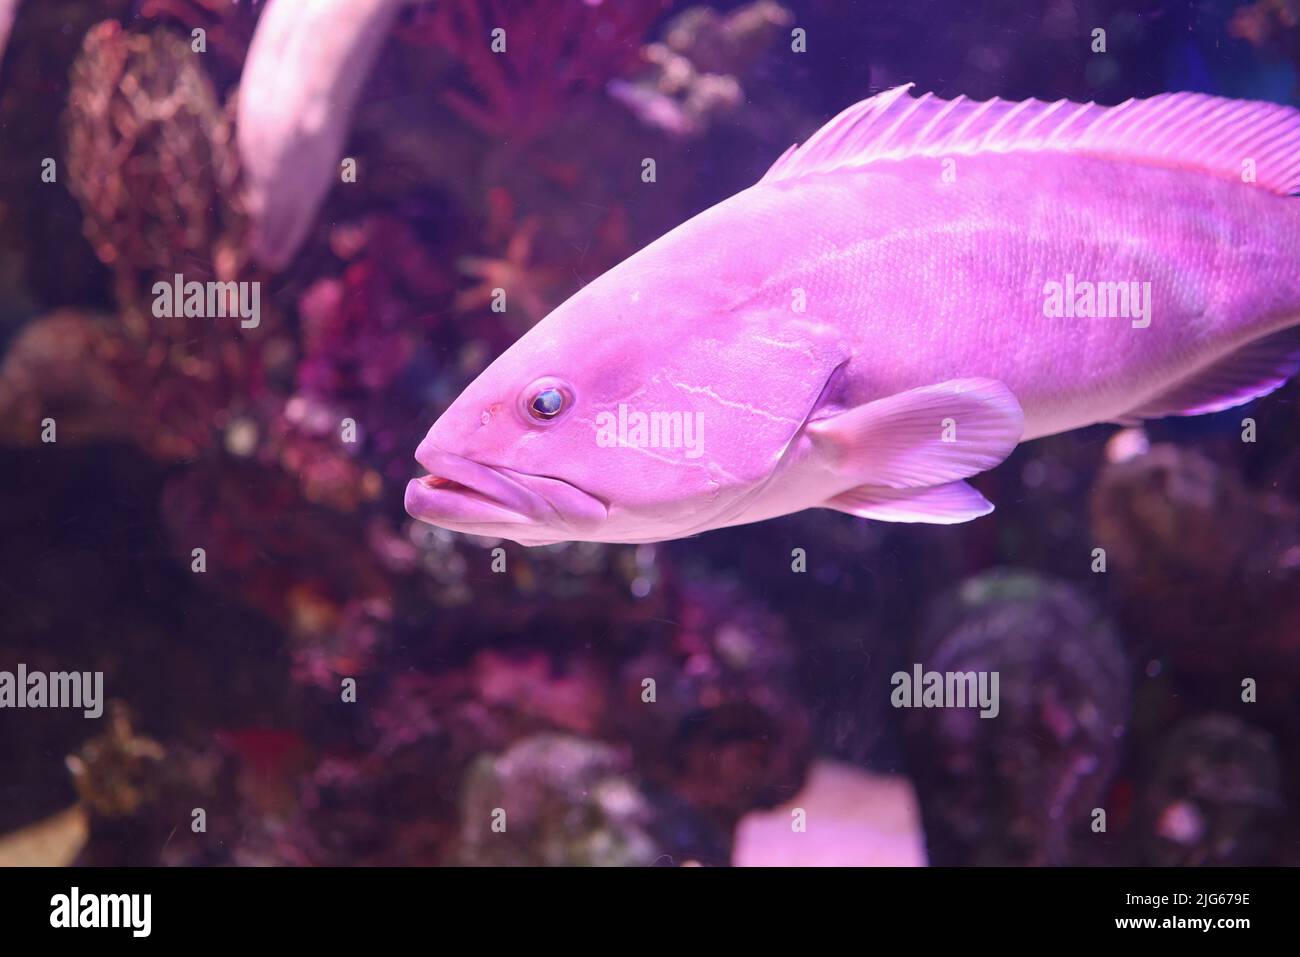 Beautiful sea bass fish in aquarium or oceanarium Stock Photo - Alamy